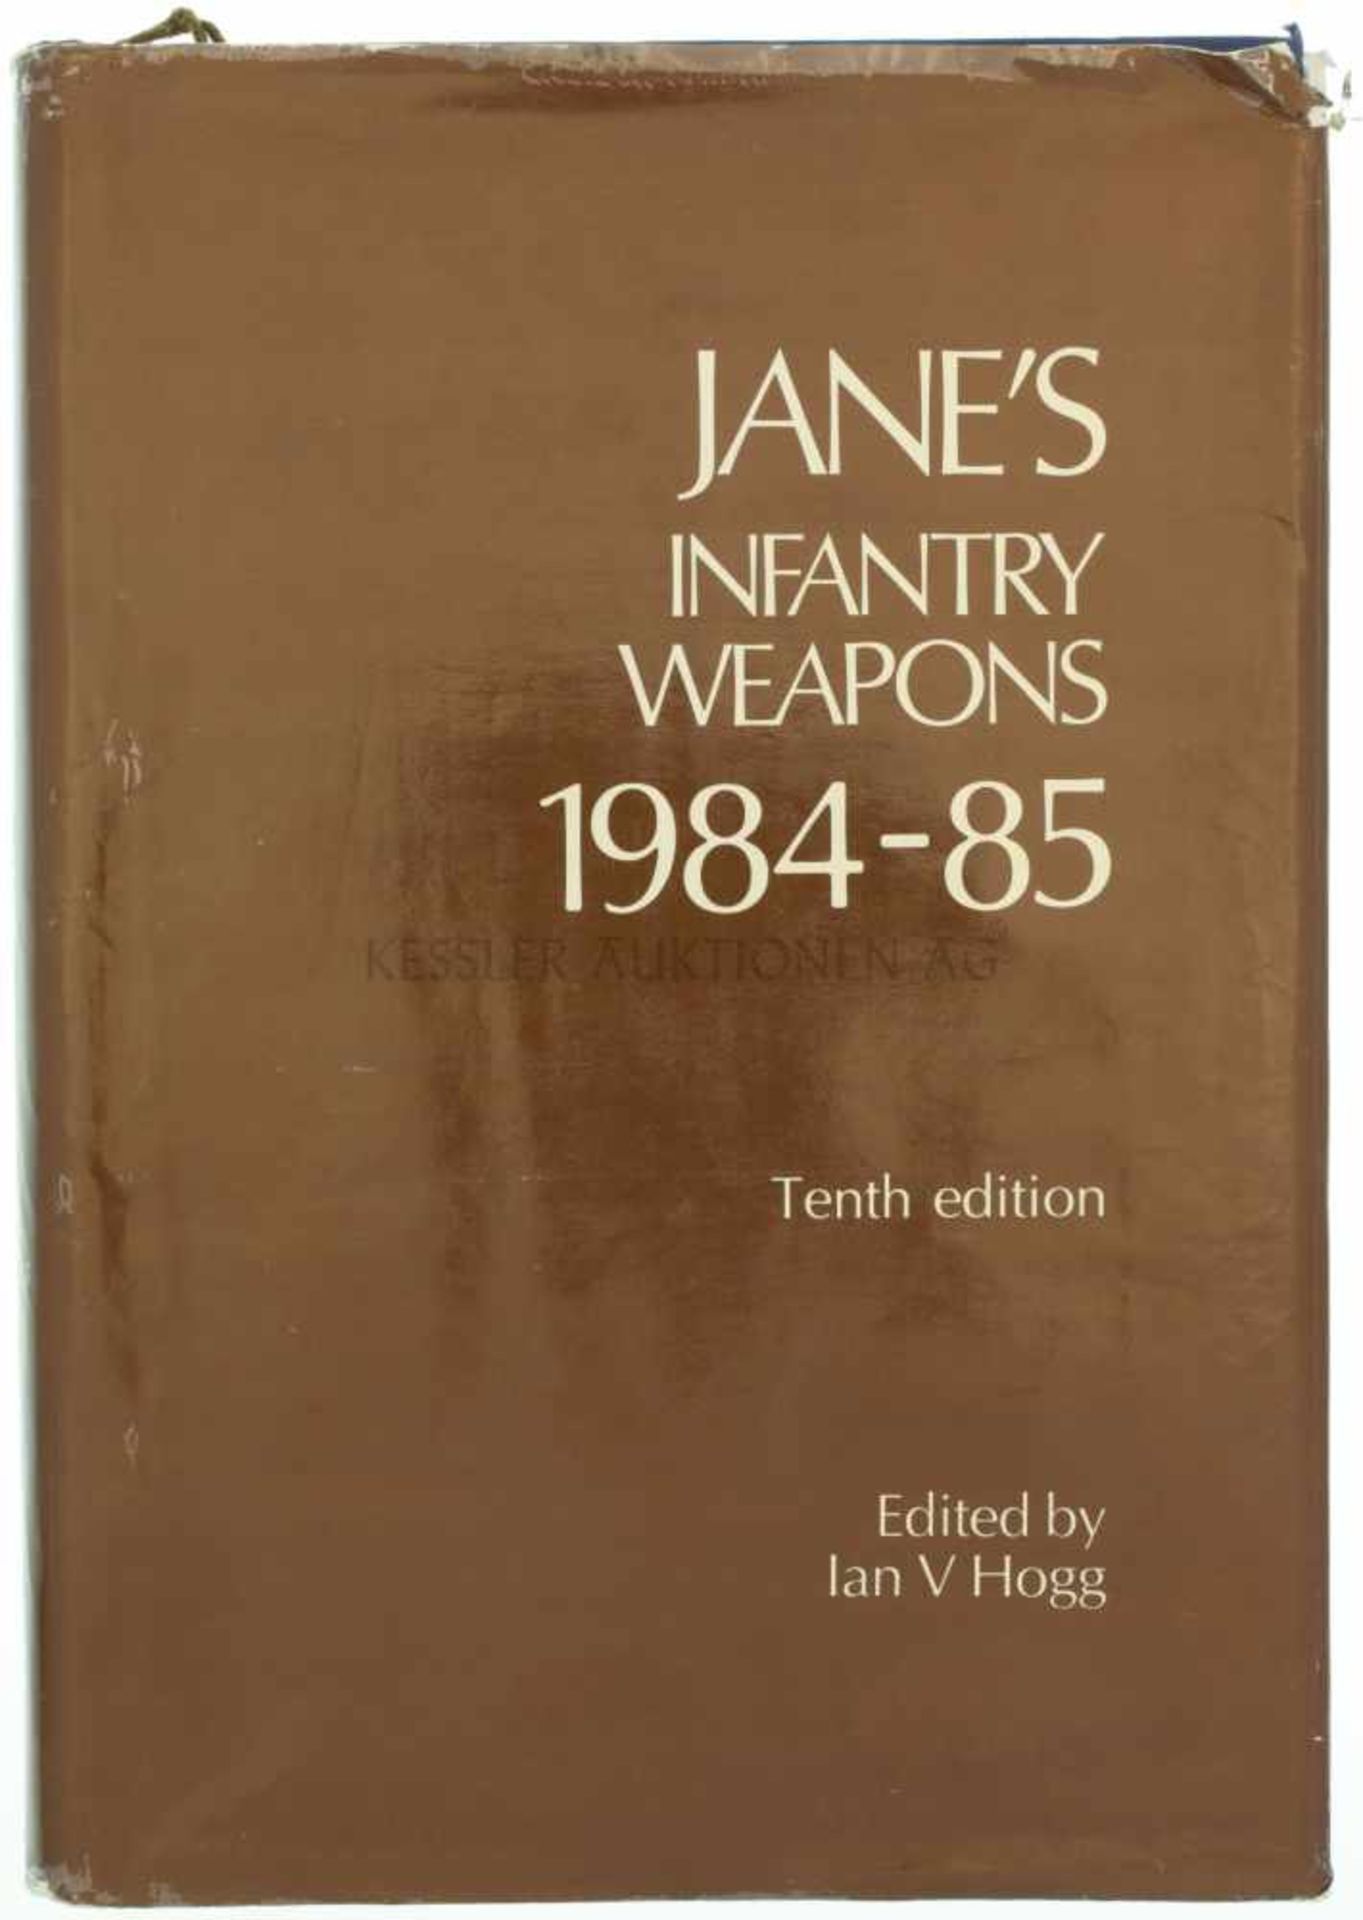 Jane's Infantry Weapons, 1984-85 10. Auflage, von Ian V. Hogg, 957 Seiten mit diversen